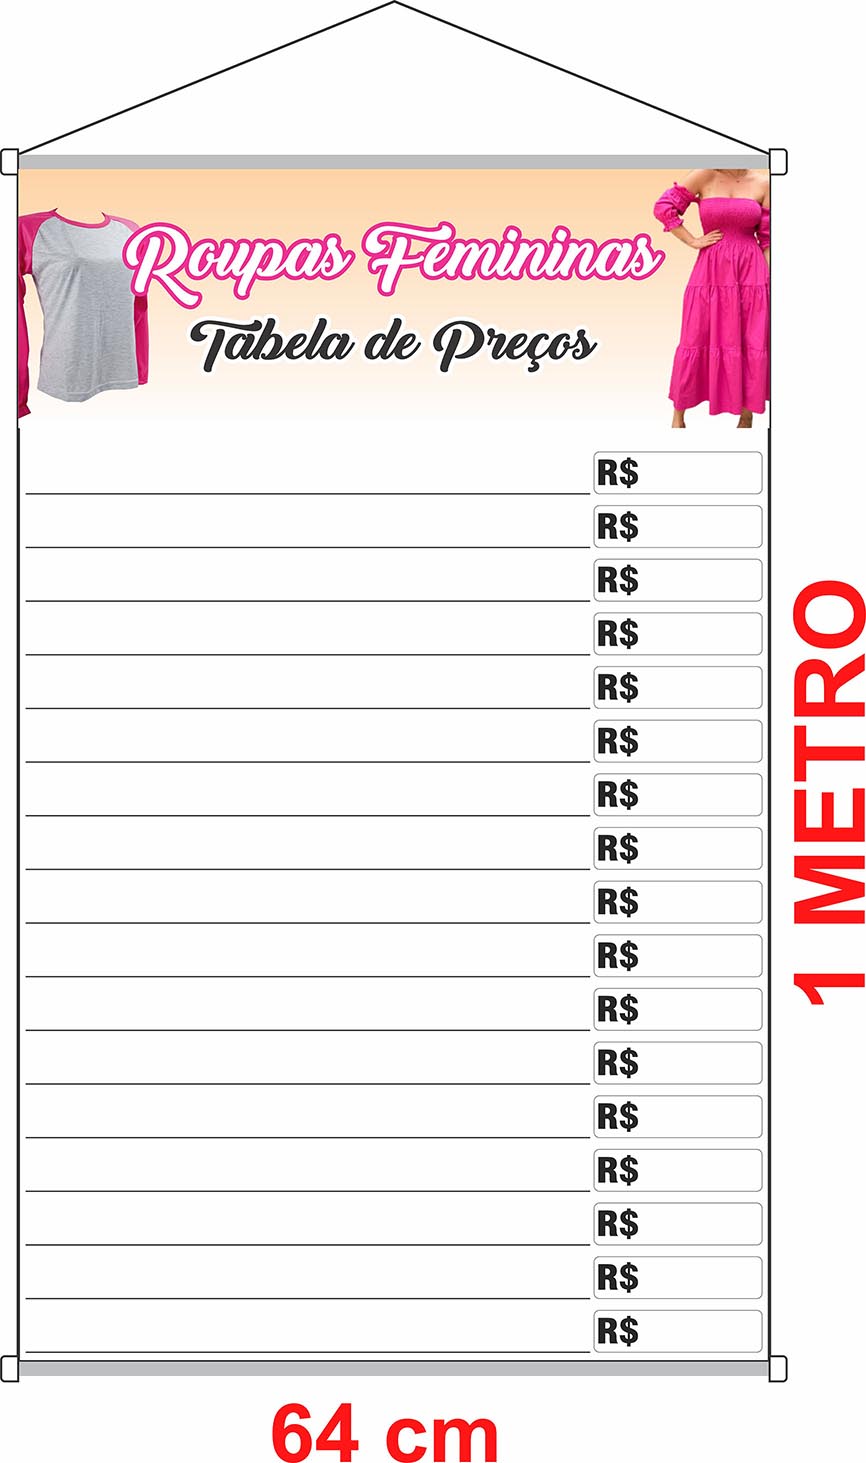 Banner Roupas Femininas tabela de preços escreve e apaga especial com laminação